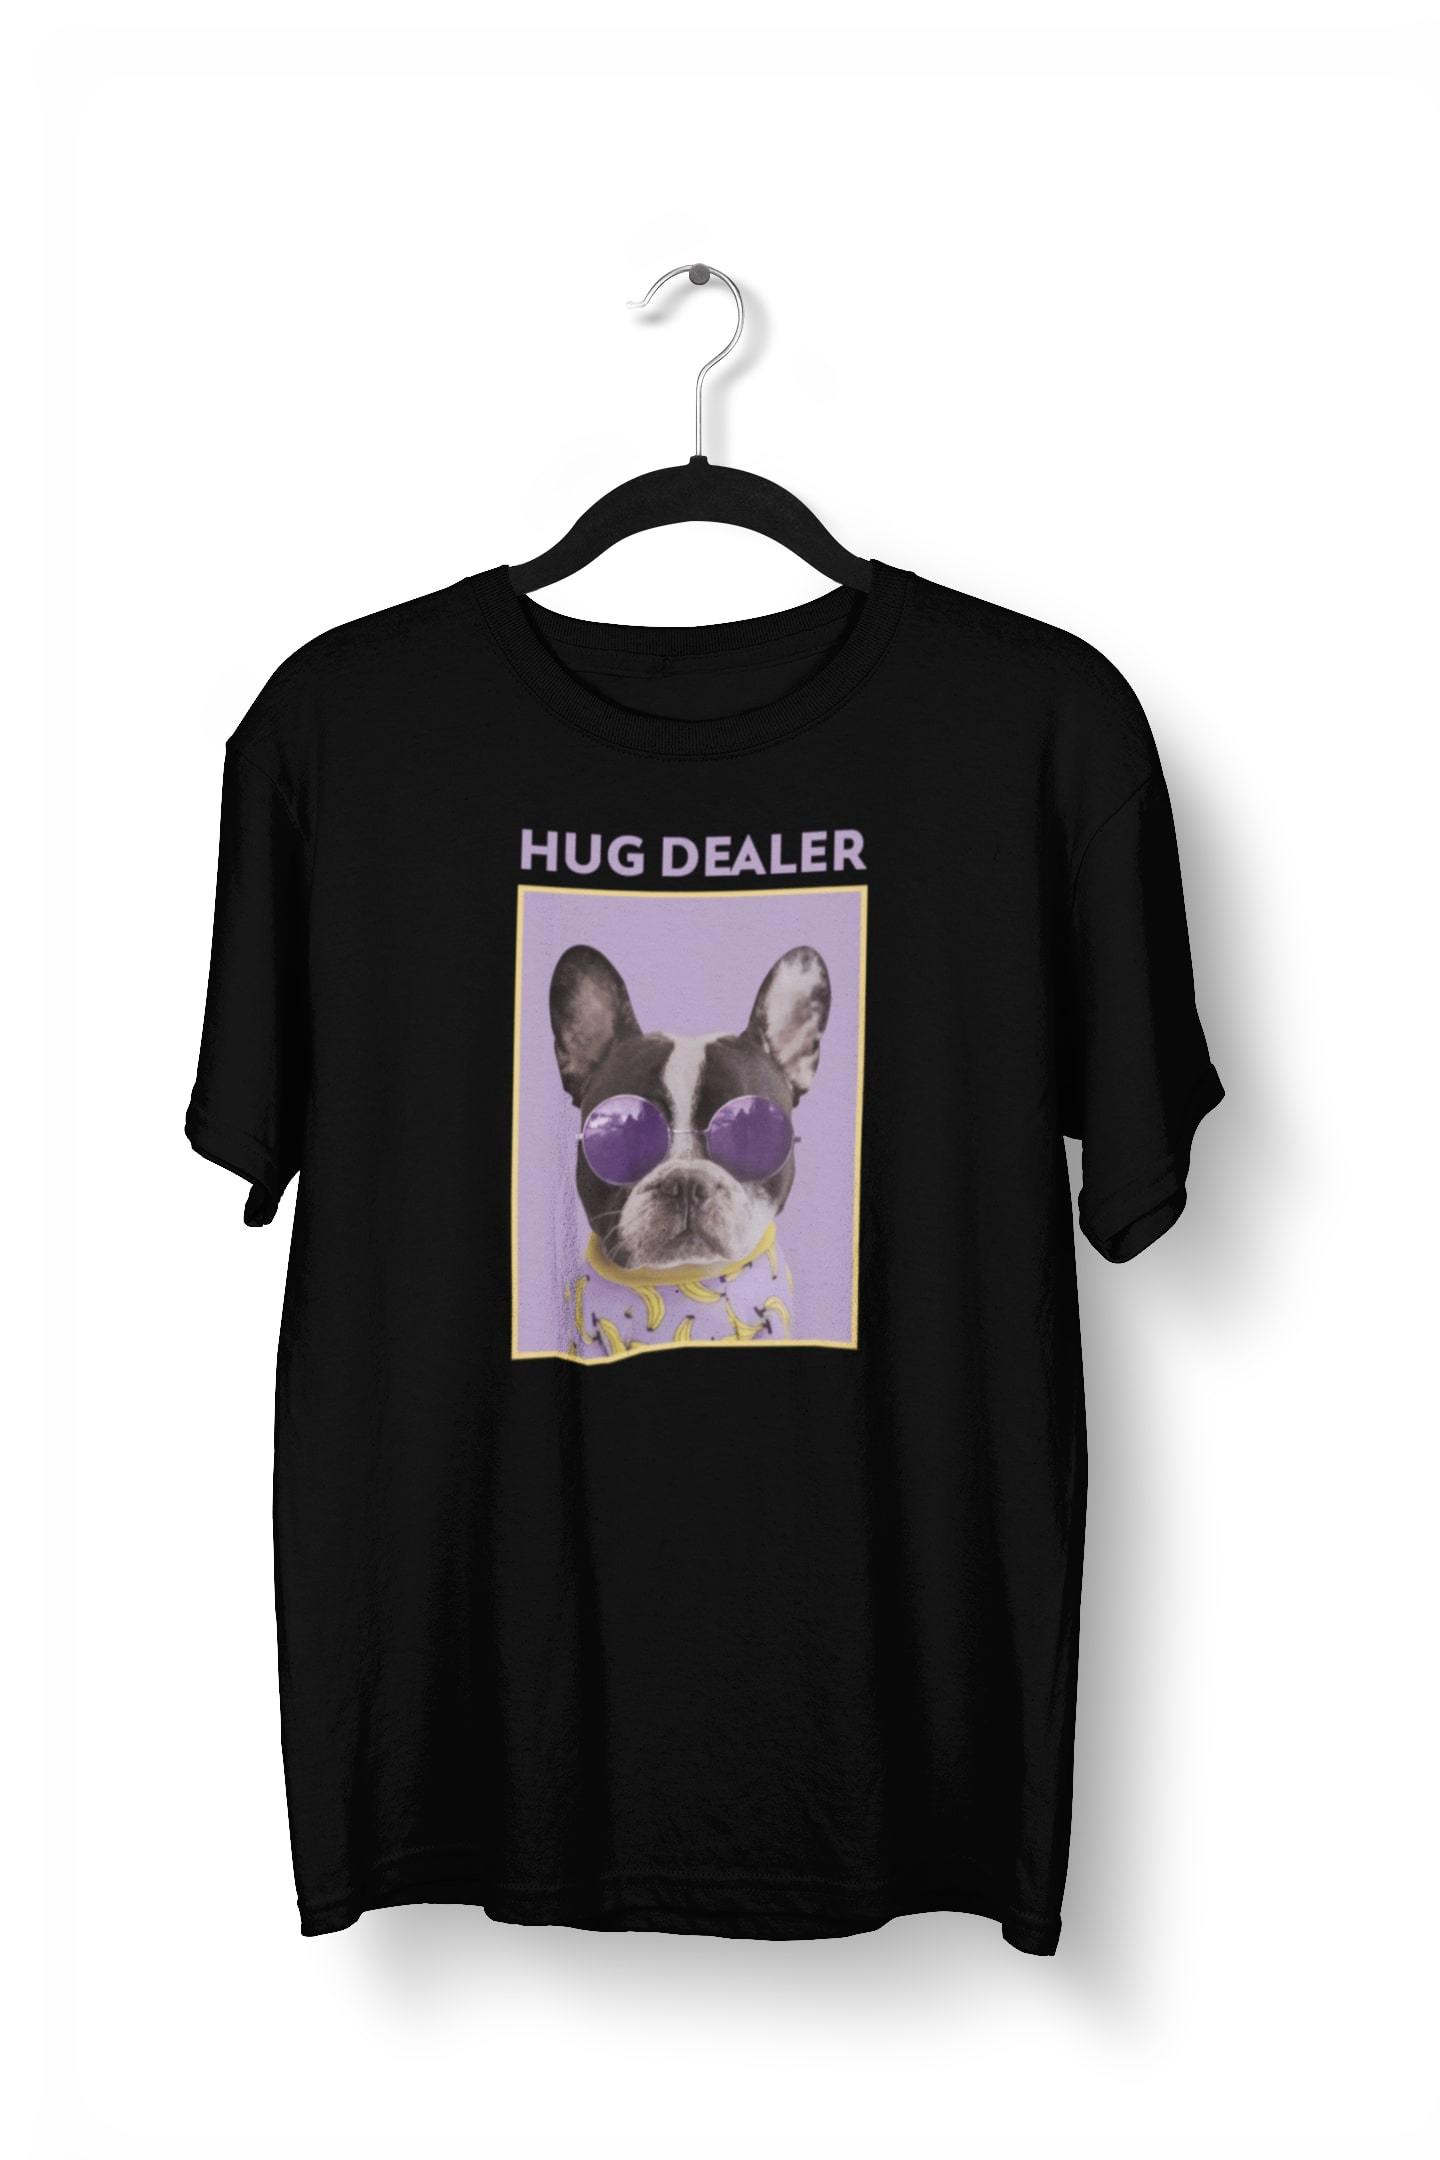 Hug Dealer Funny Dog Printed T-Shirt